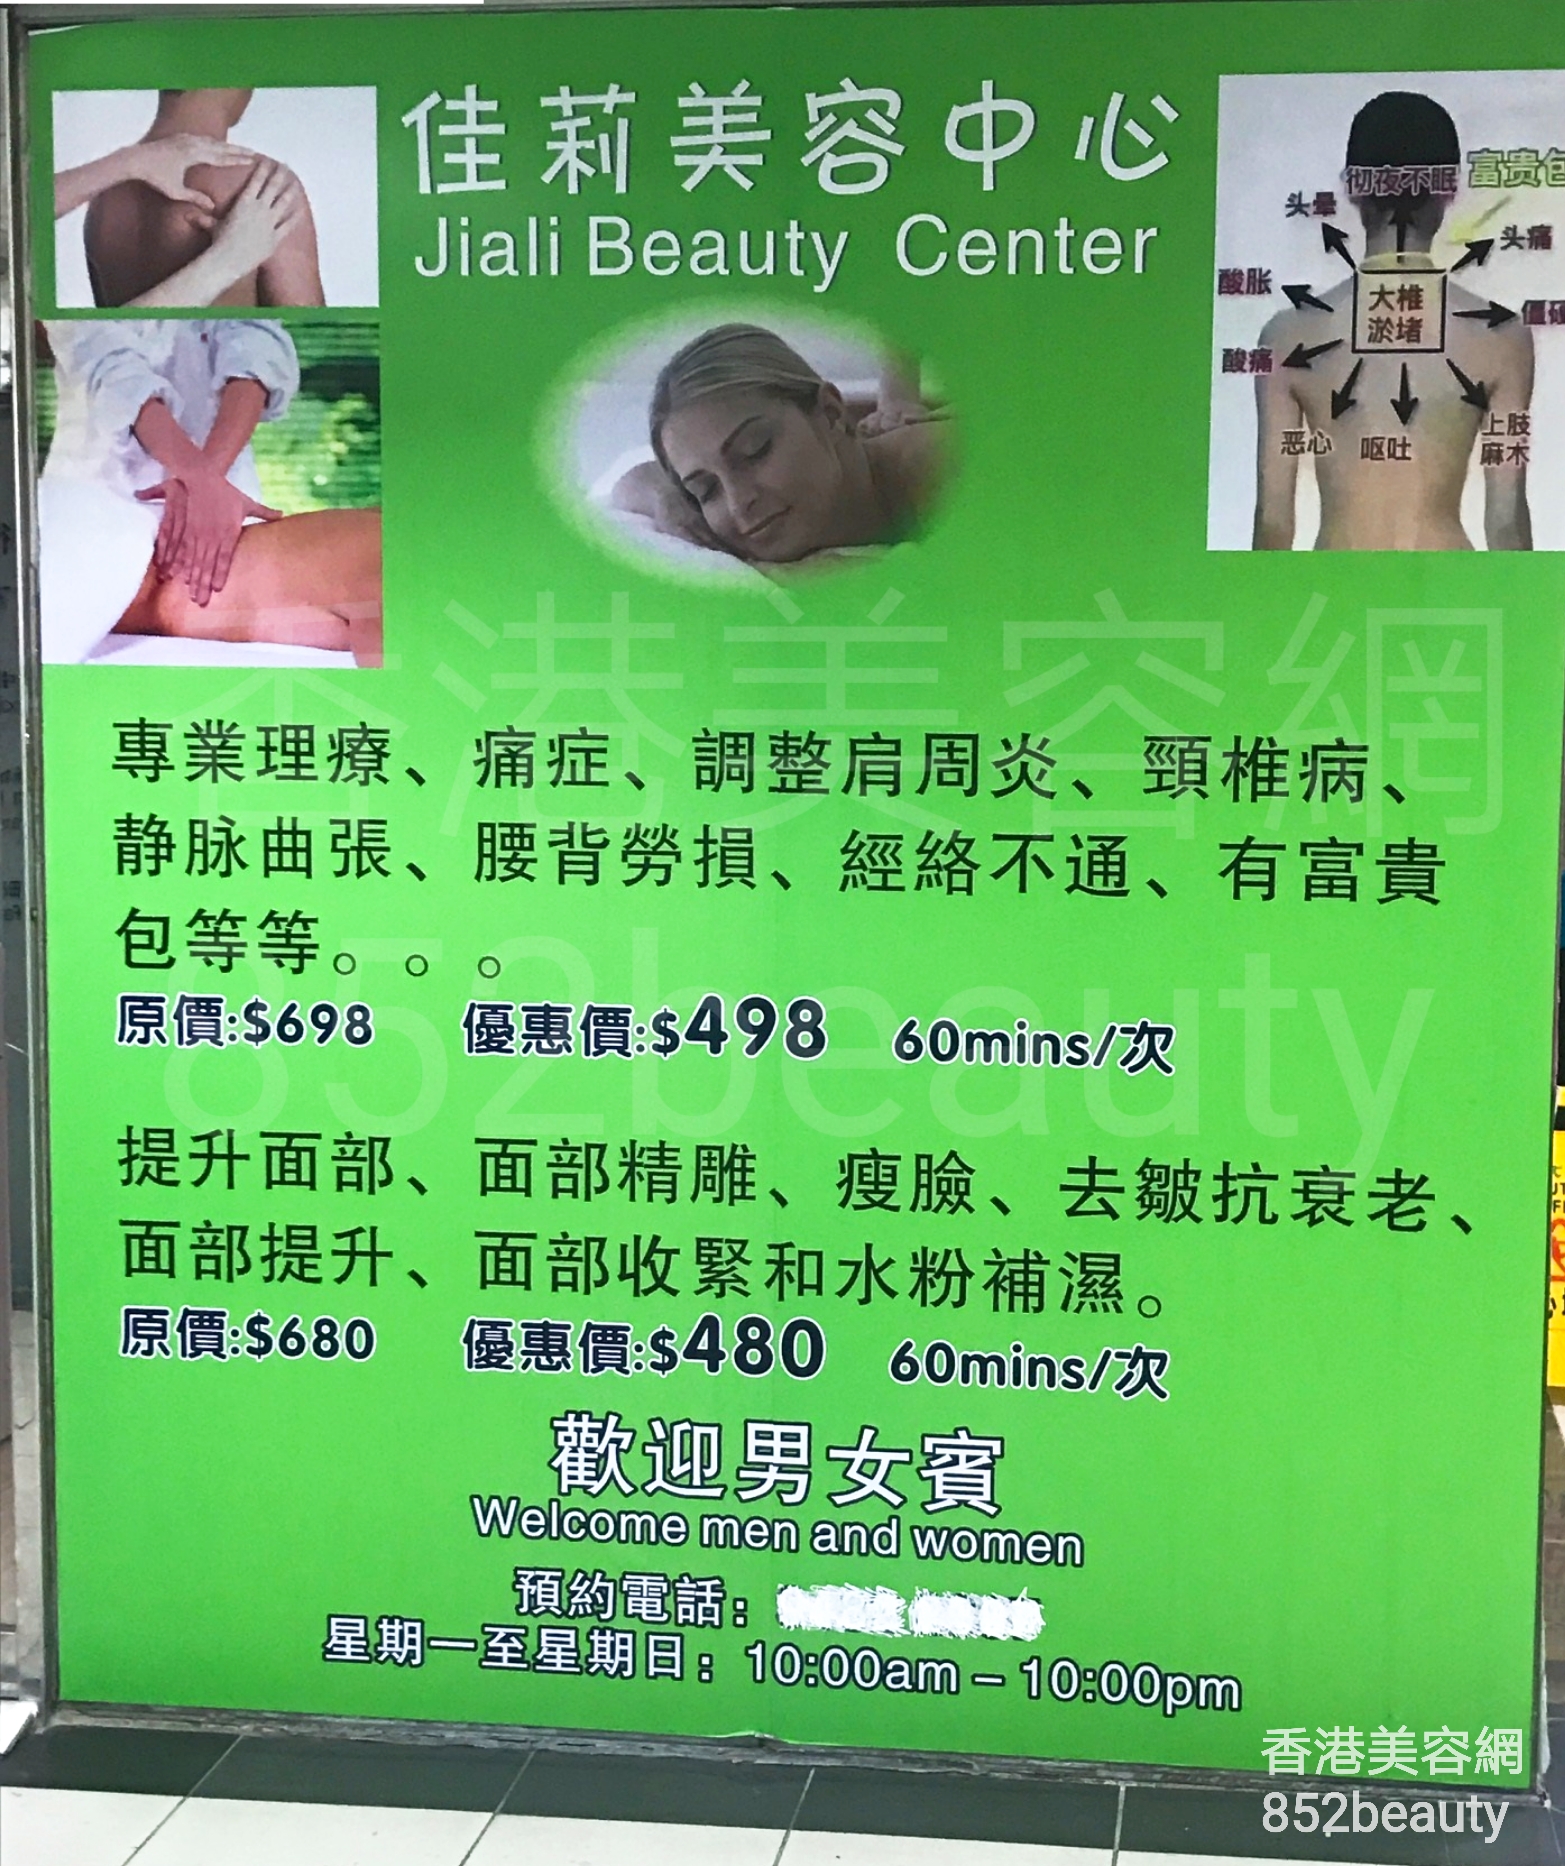 按摩/SPA: 佳莉美容中心 Jiali Beauty Center